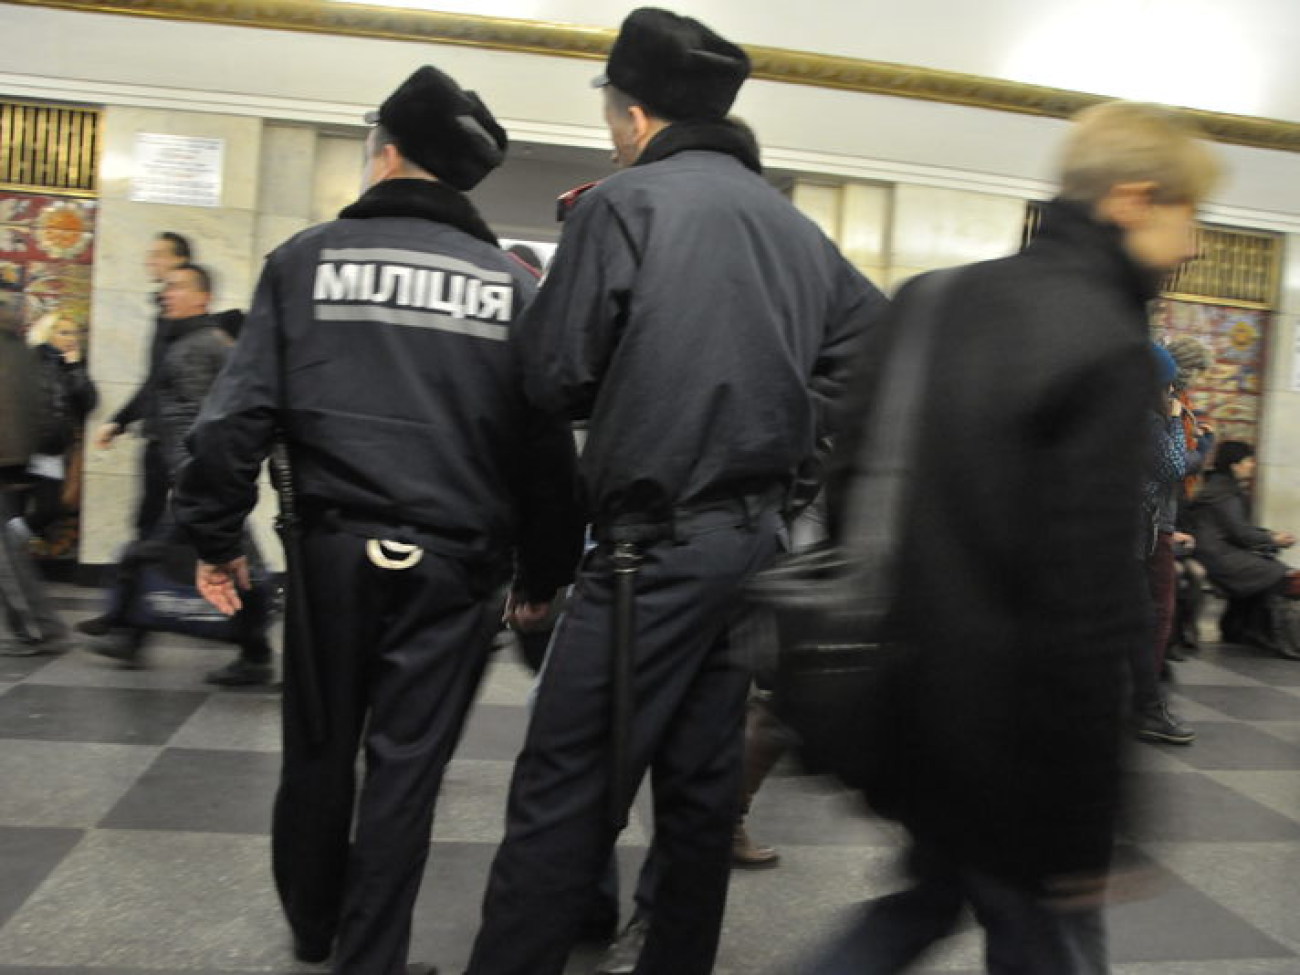 В столичном метро случилась пробка, 26 ноября 2012г.